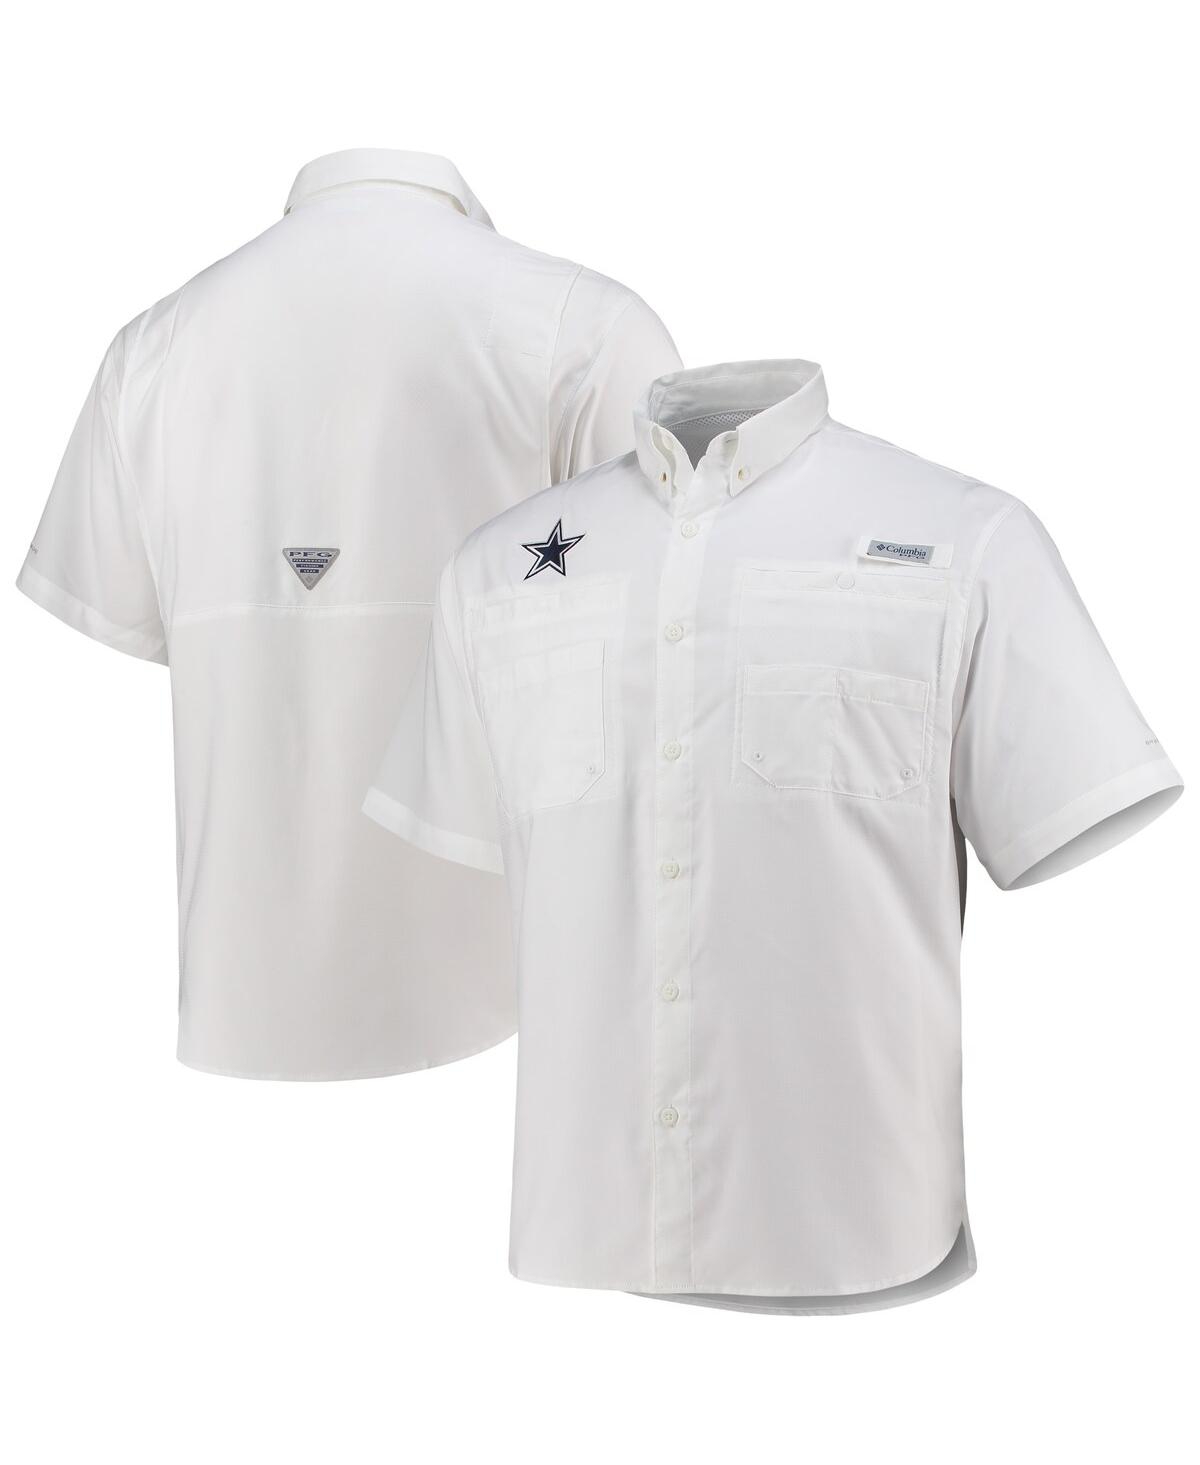 Men's Pfg Columbia White Dallas Cowboys Tamiami Omni-Shade Button-Down Shirt - White